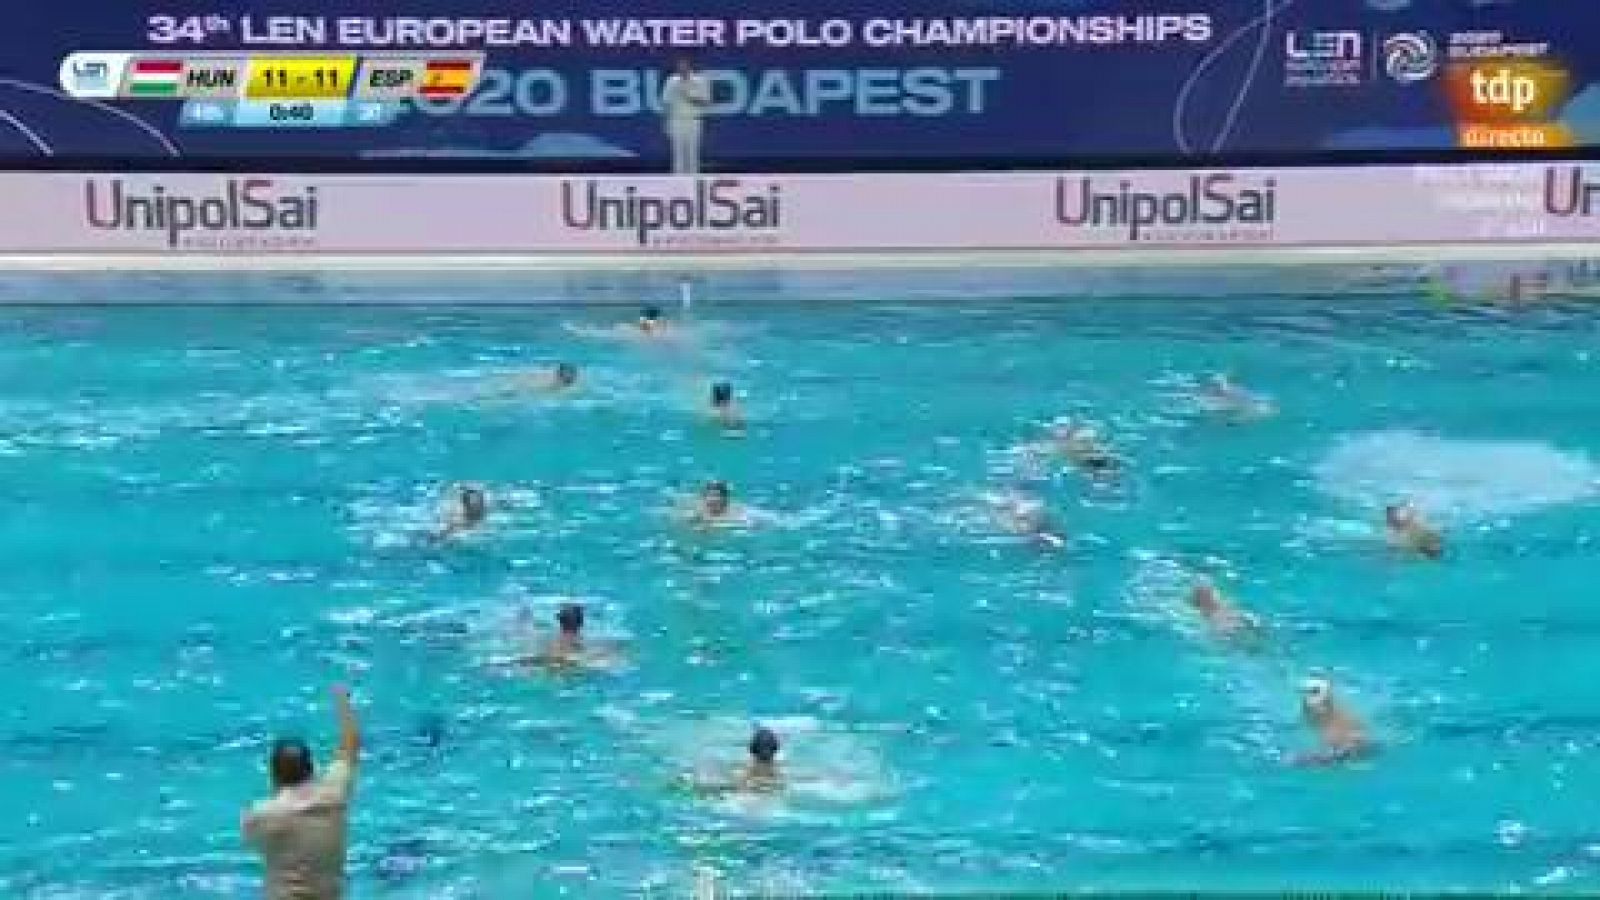 Europeo de waterpolo - Hungría 11-11 España - Final del partido